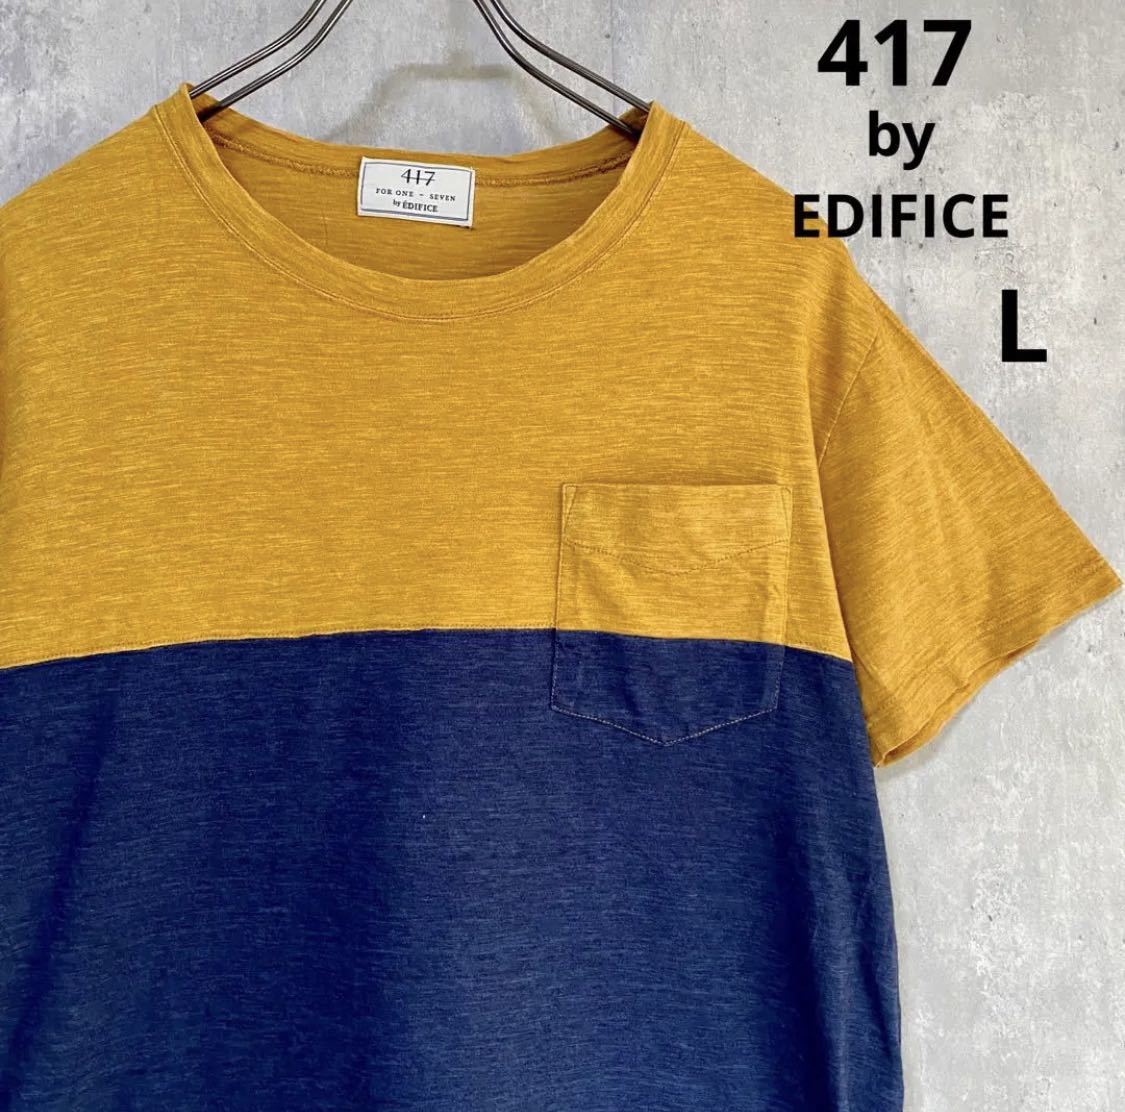 優れた品質 エディフィス 417 by EDIFICE 茶 Tシャツ バイカラー 綿